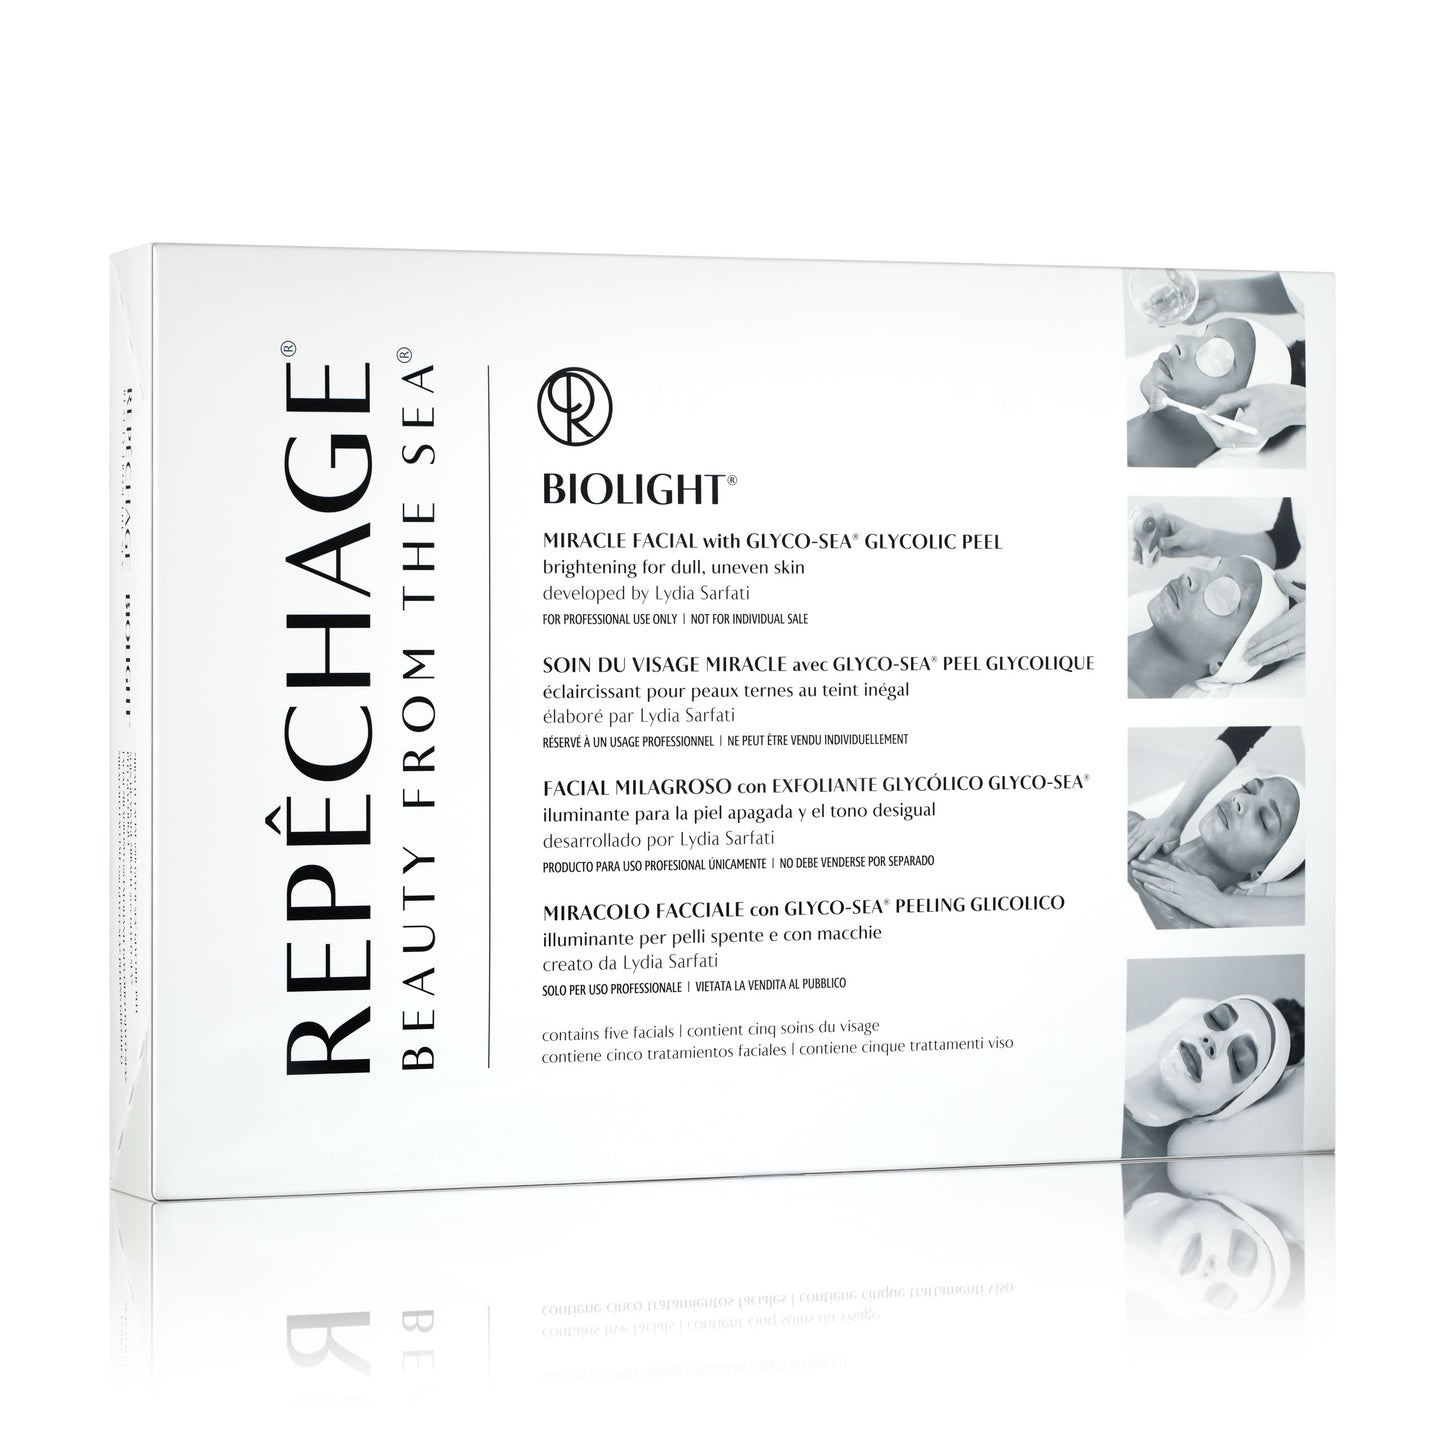 Repechage Biolight Miracle Facial Kit, 5 Treatments